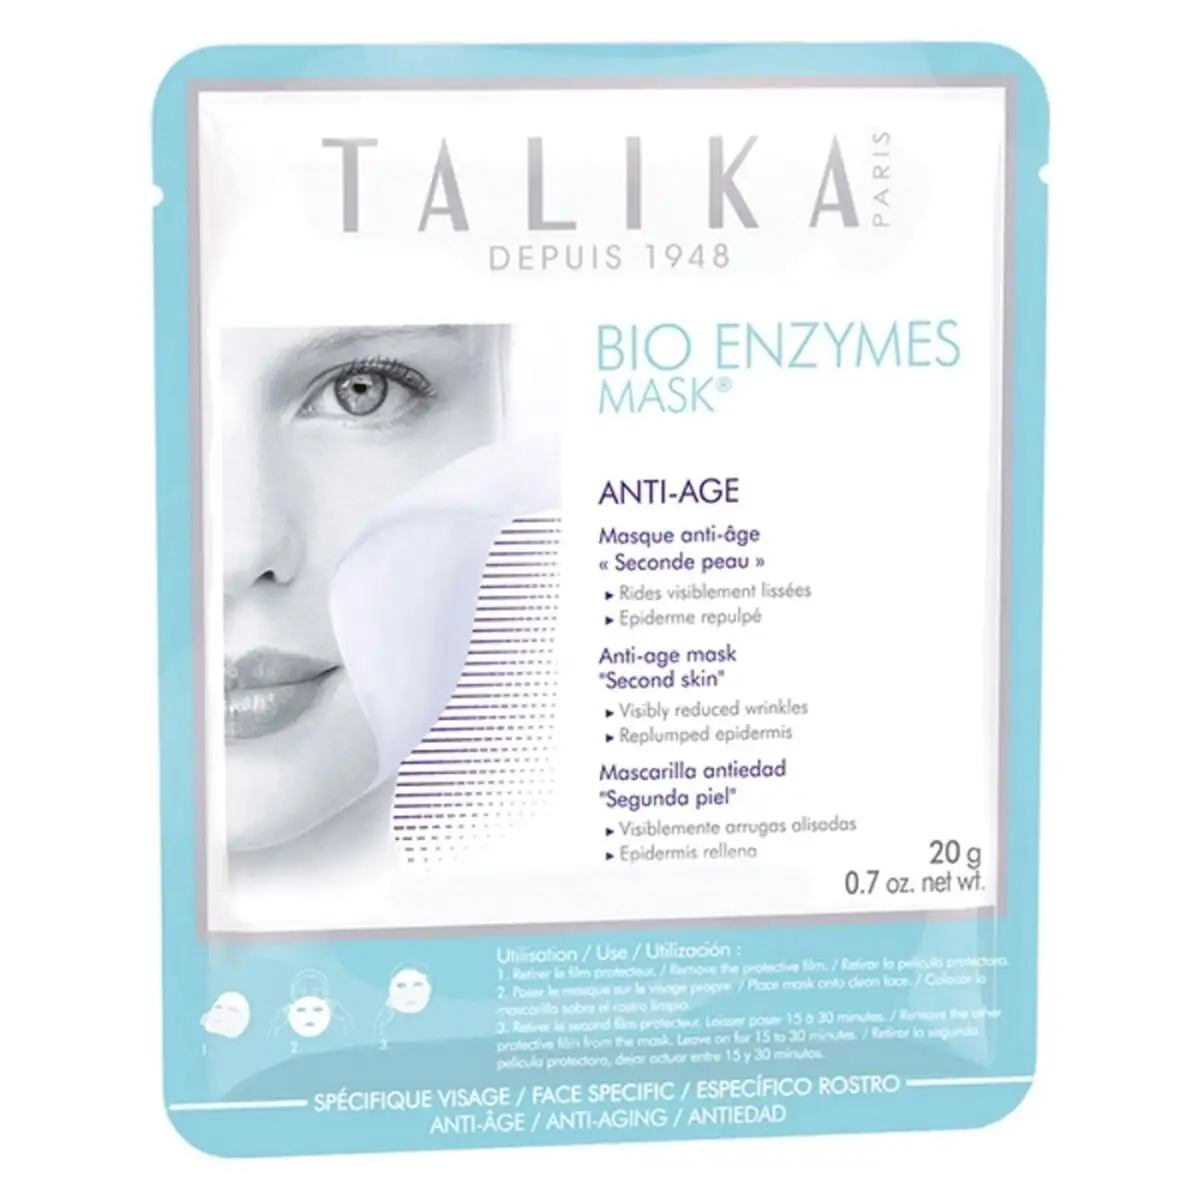 Masque facial talika bio enzymes anti age 20 g_7757. DIAYTAR SENEGAL - Votre Boutique en Ligne, Votre Choix Illimité. Parcourez nos rayons et découvrez des produits qui vous inspirent, de la mode à la maison et bien plus.